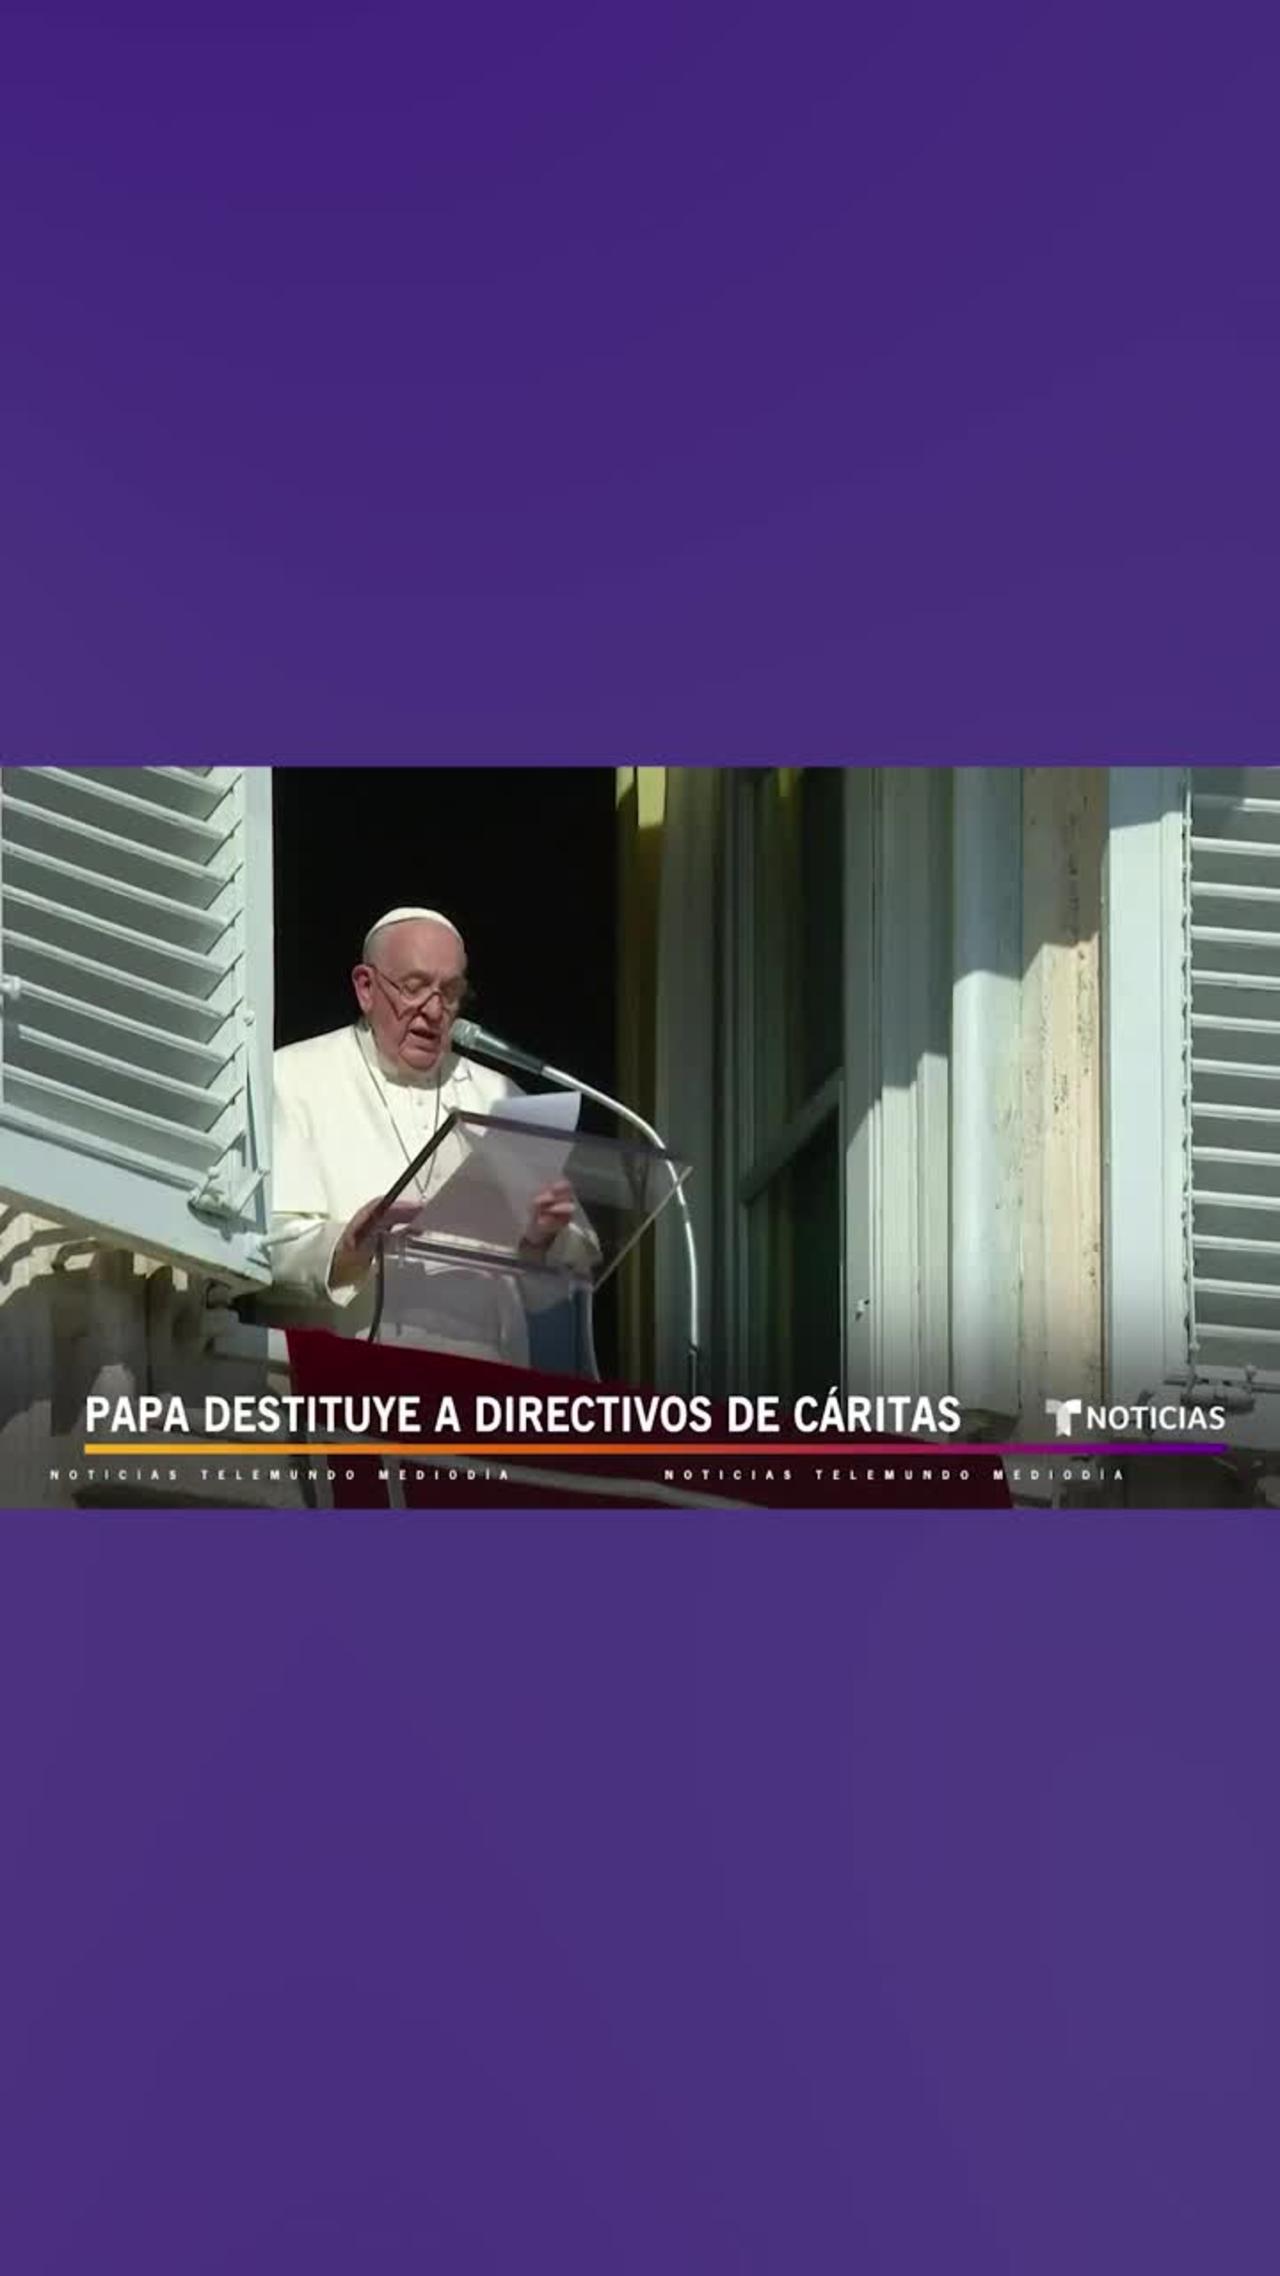 El Papa echa a toda la directiva de Caritas Internationalis #Shorts _ Noticias Telemundo